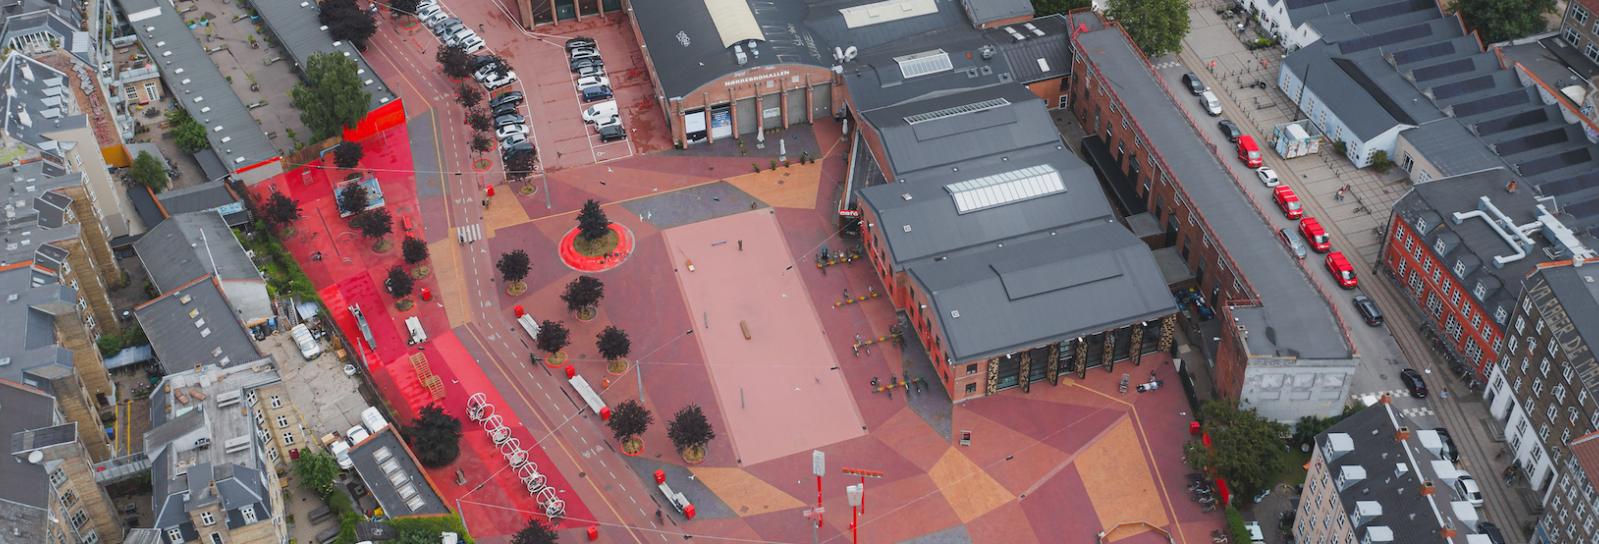 Dronefoto: Den røde plads og Nørrebro Bibliotek